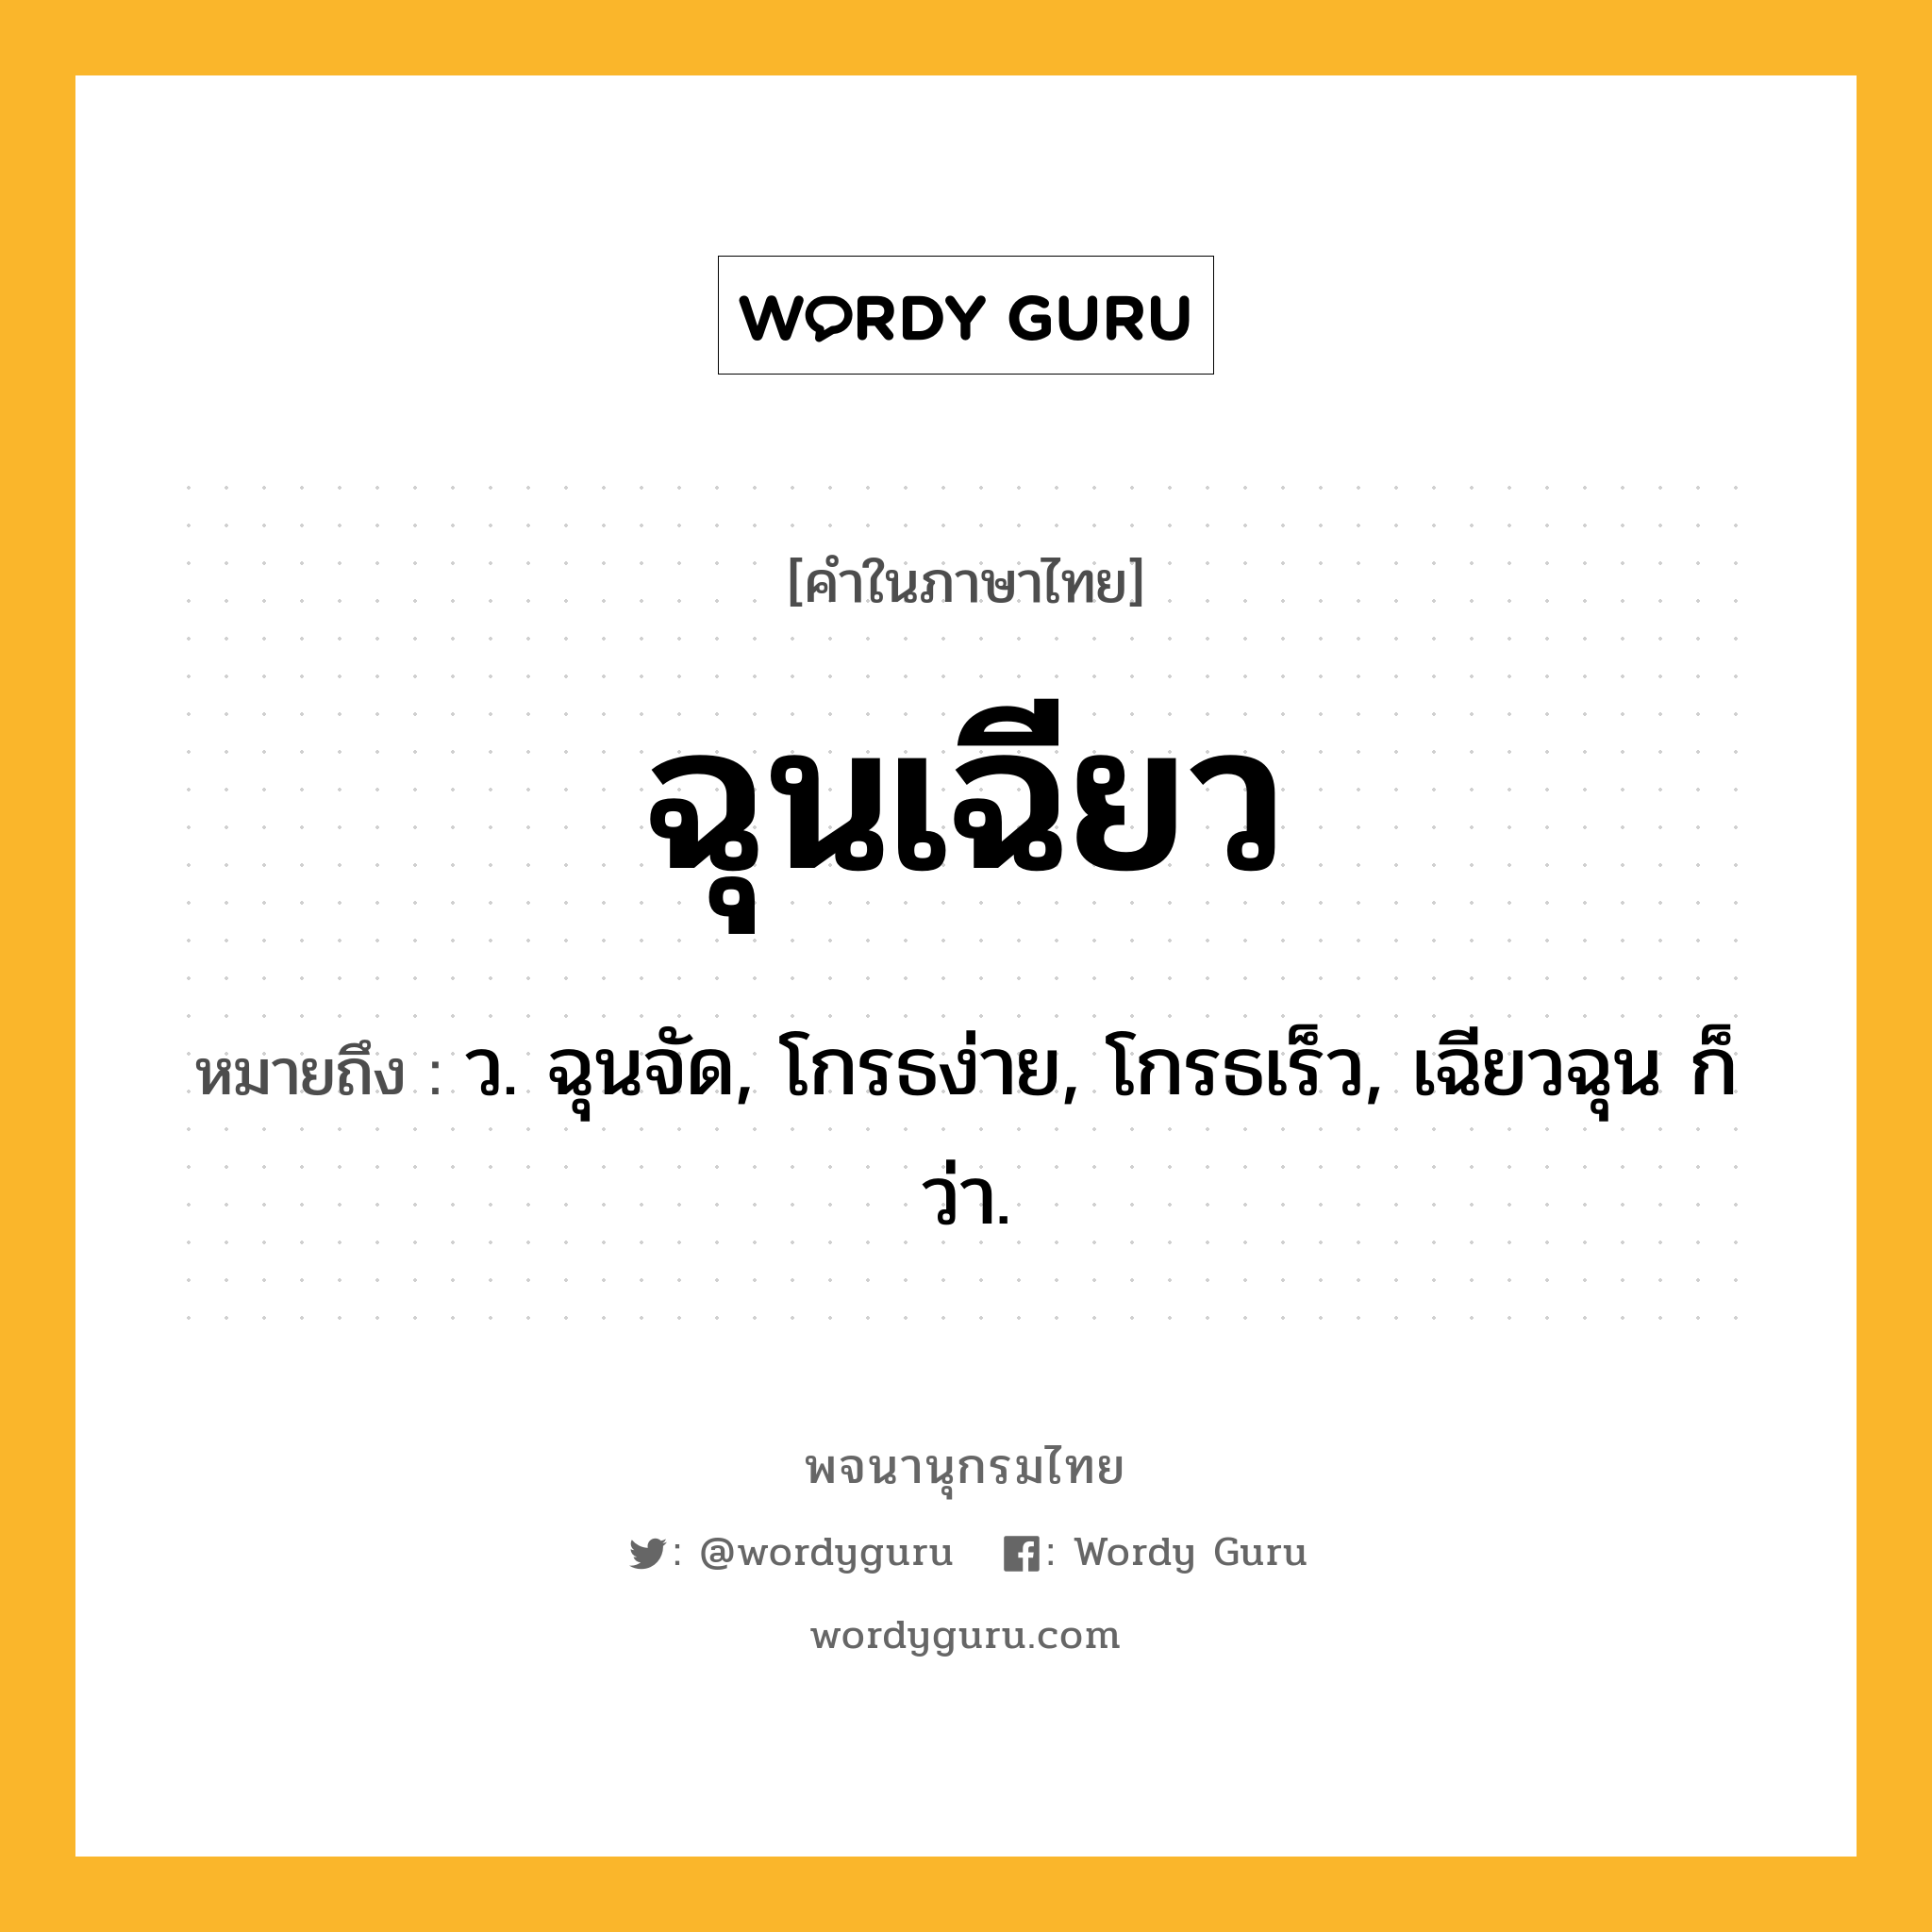 ฉุนเฉียว หมายถึงอะไร?, คำในภาษาไทย ฉุนเฉียว หมายถึง ว. ฉุนจัด, โกรธง่าย, โกรธเร็ว, เฉียวฉุน ก็ว่า.